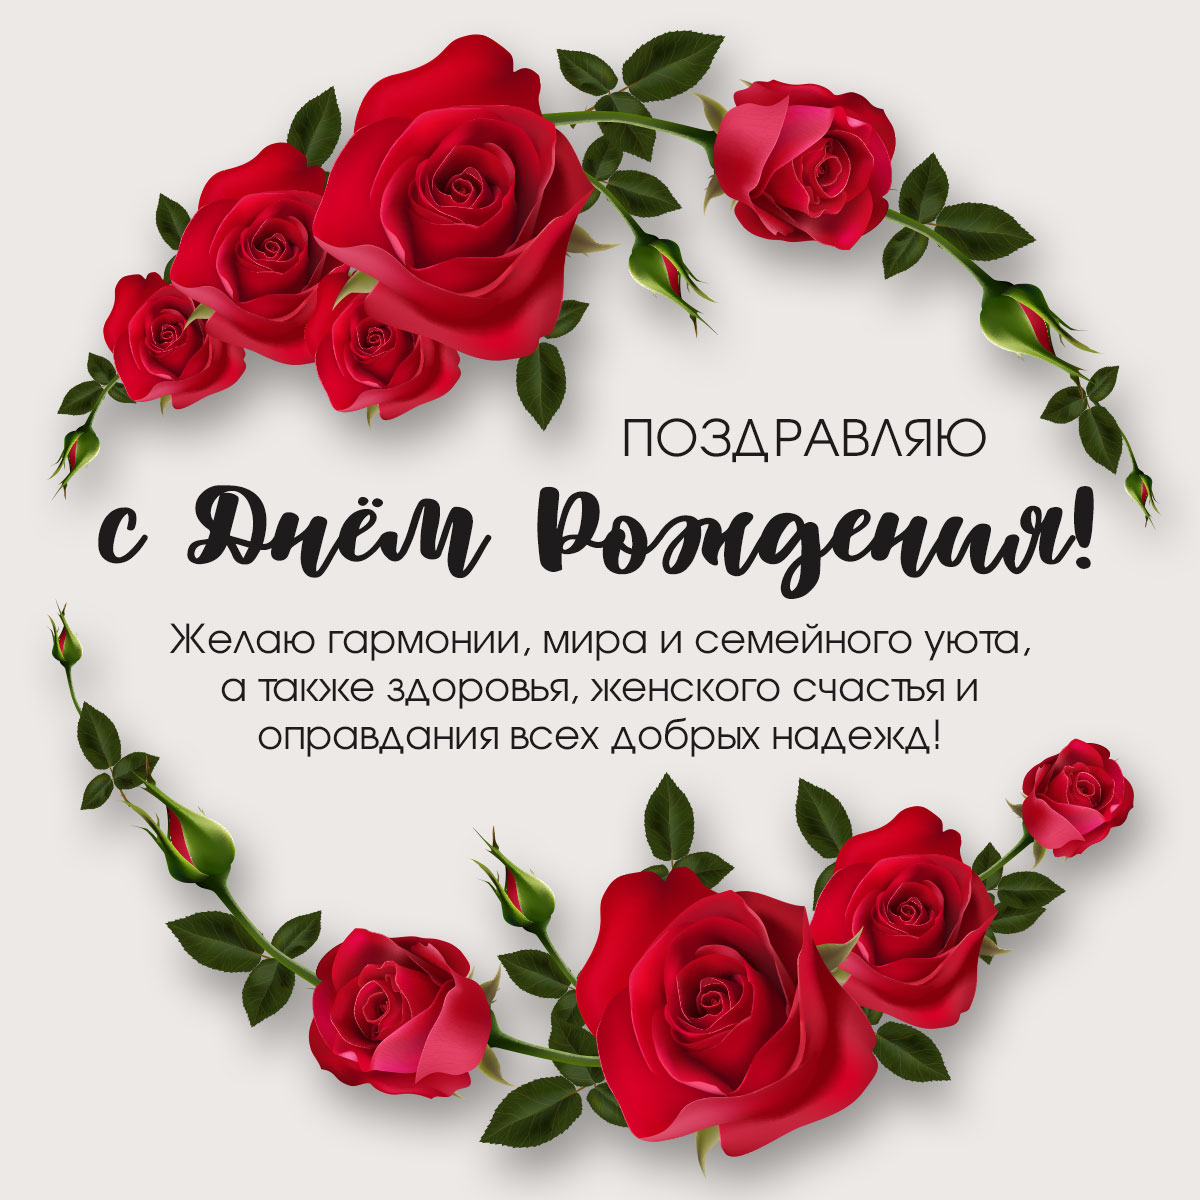 Открытка поздравление с днем рождения женщине с красными розами.